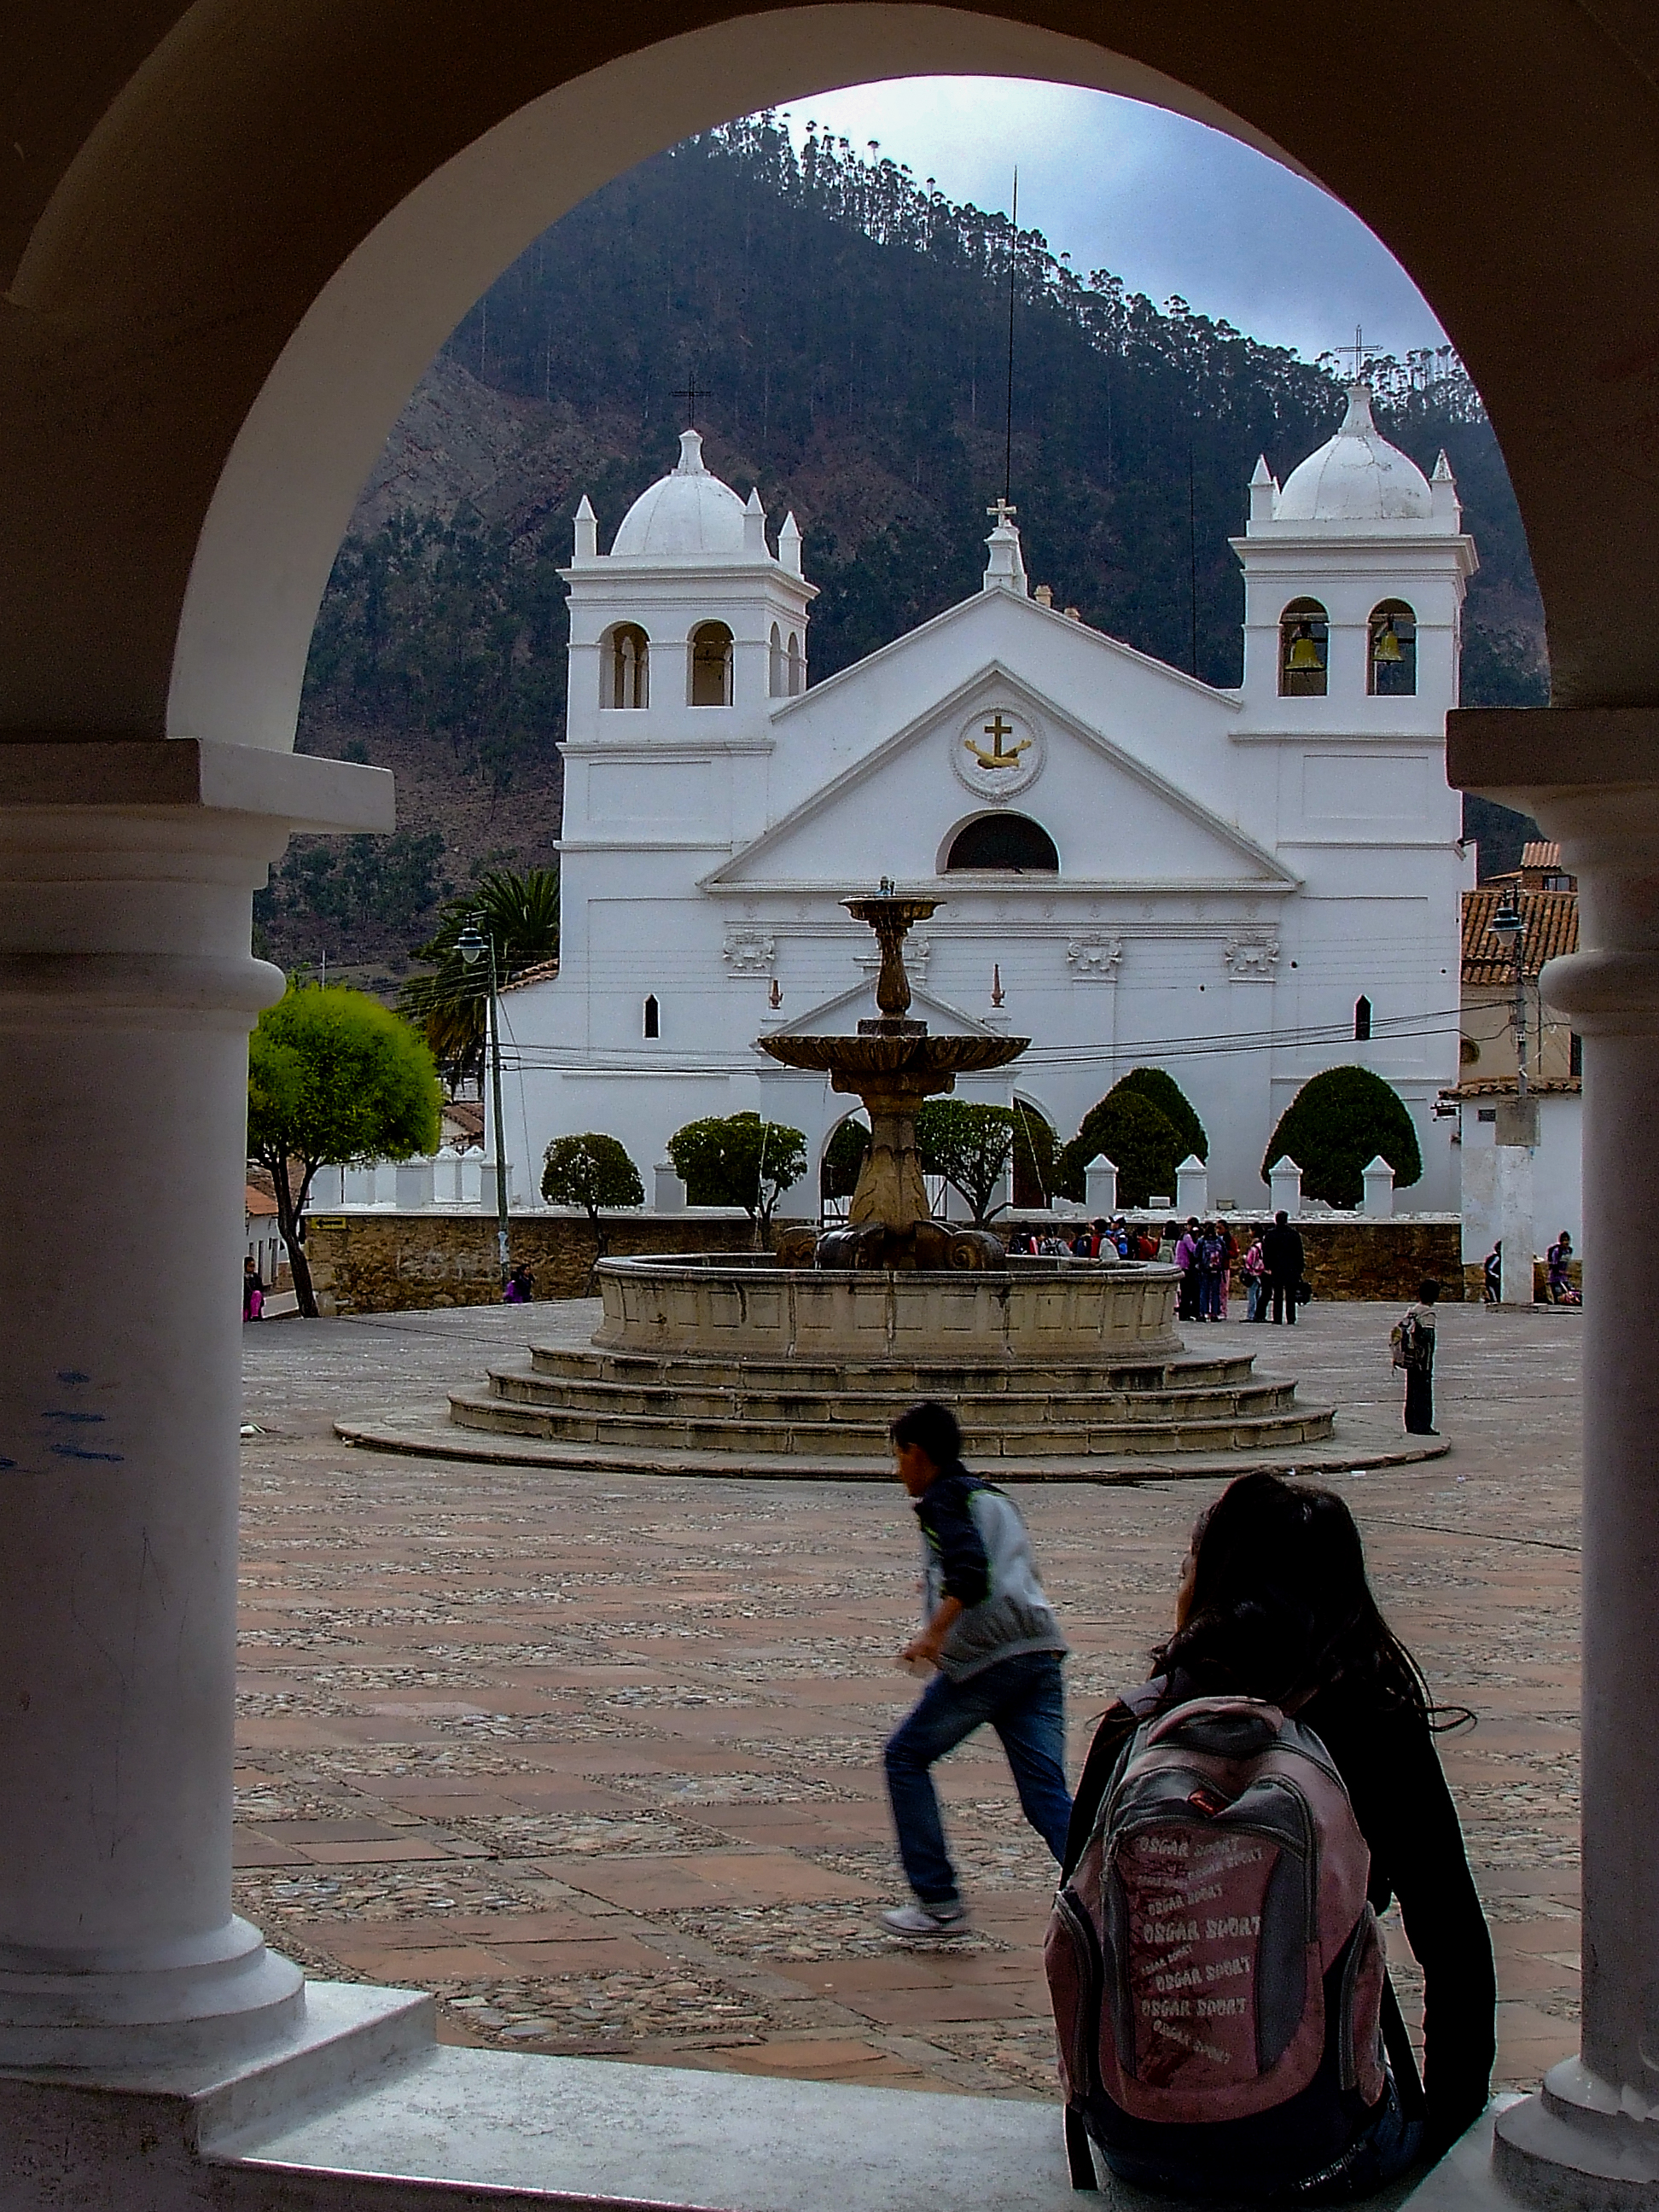 Durante el recreo ciudad de Sucre, Sucre, Bolivia